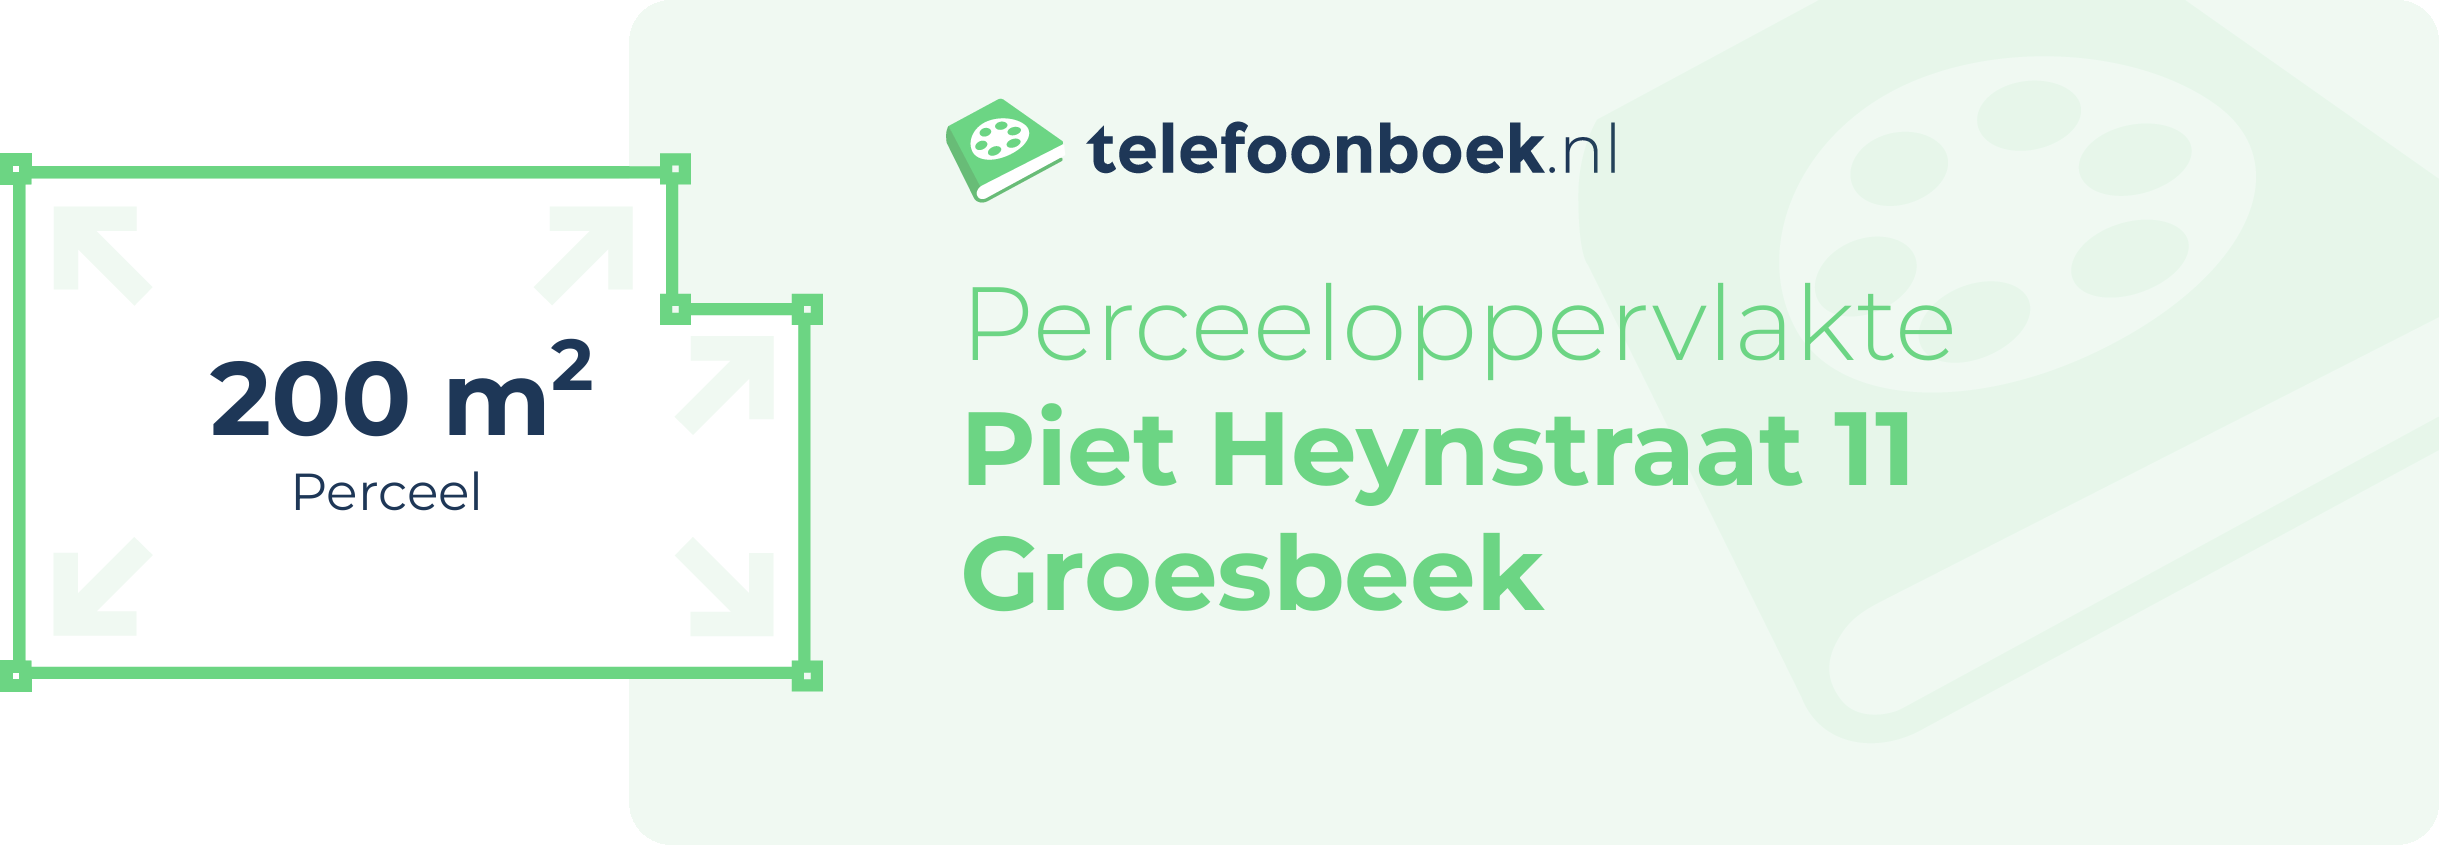 Perceeloppervlakte Piet Heynstraat 11 Groesbeek